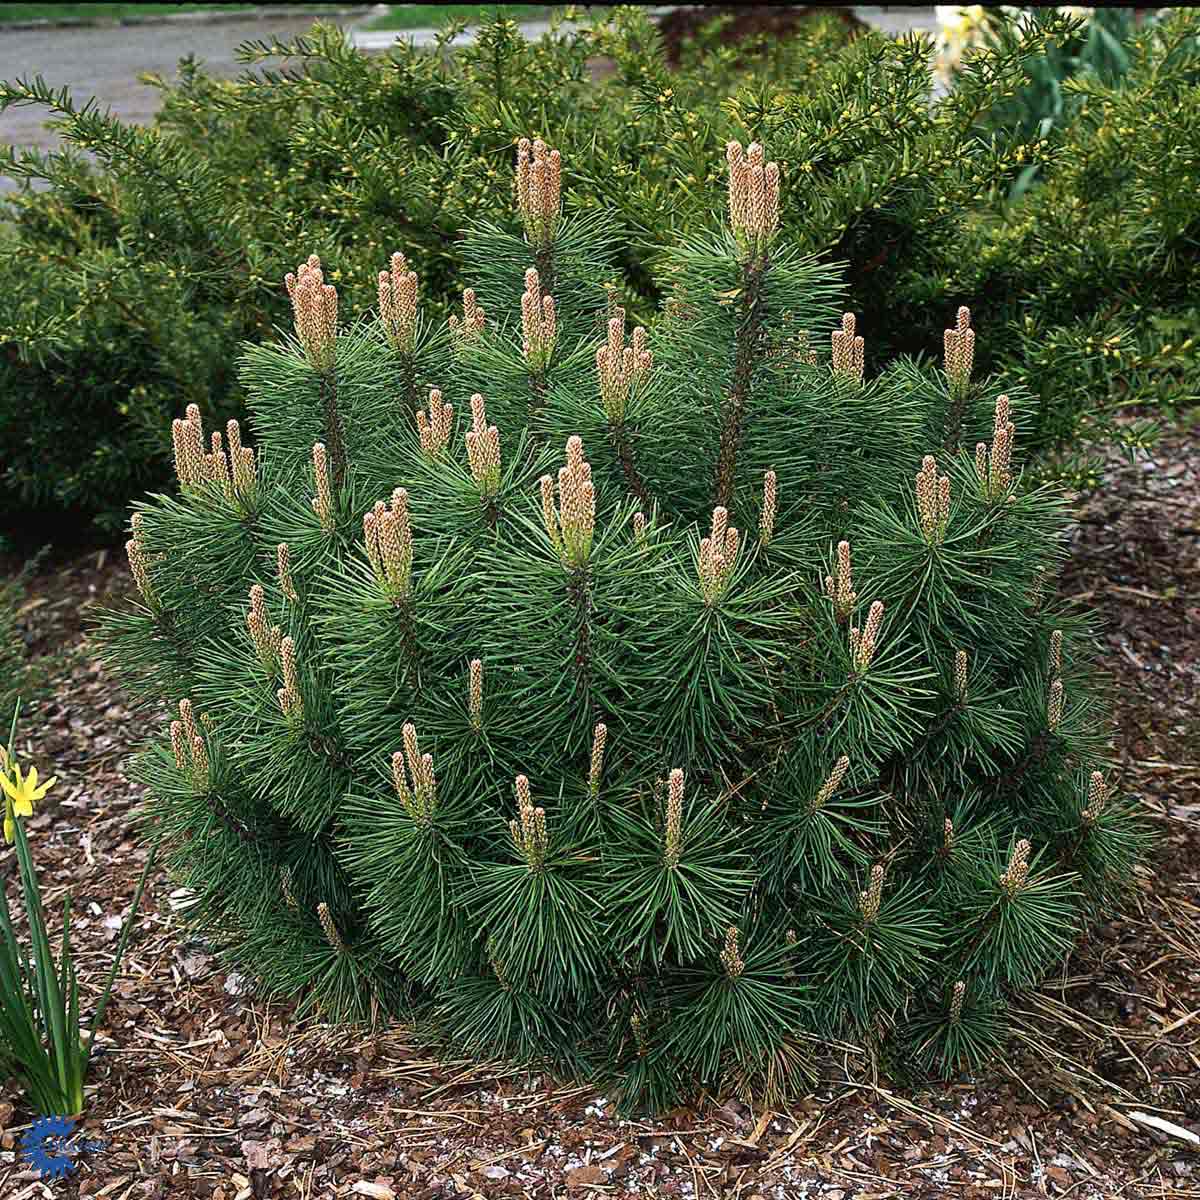 Bjergfyr (Pinus mugo) her med flotte grønne nåle her plantet med bark omkring sig